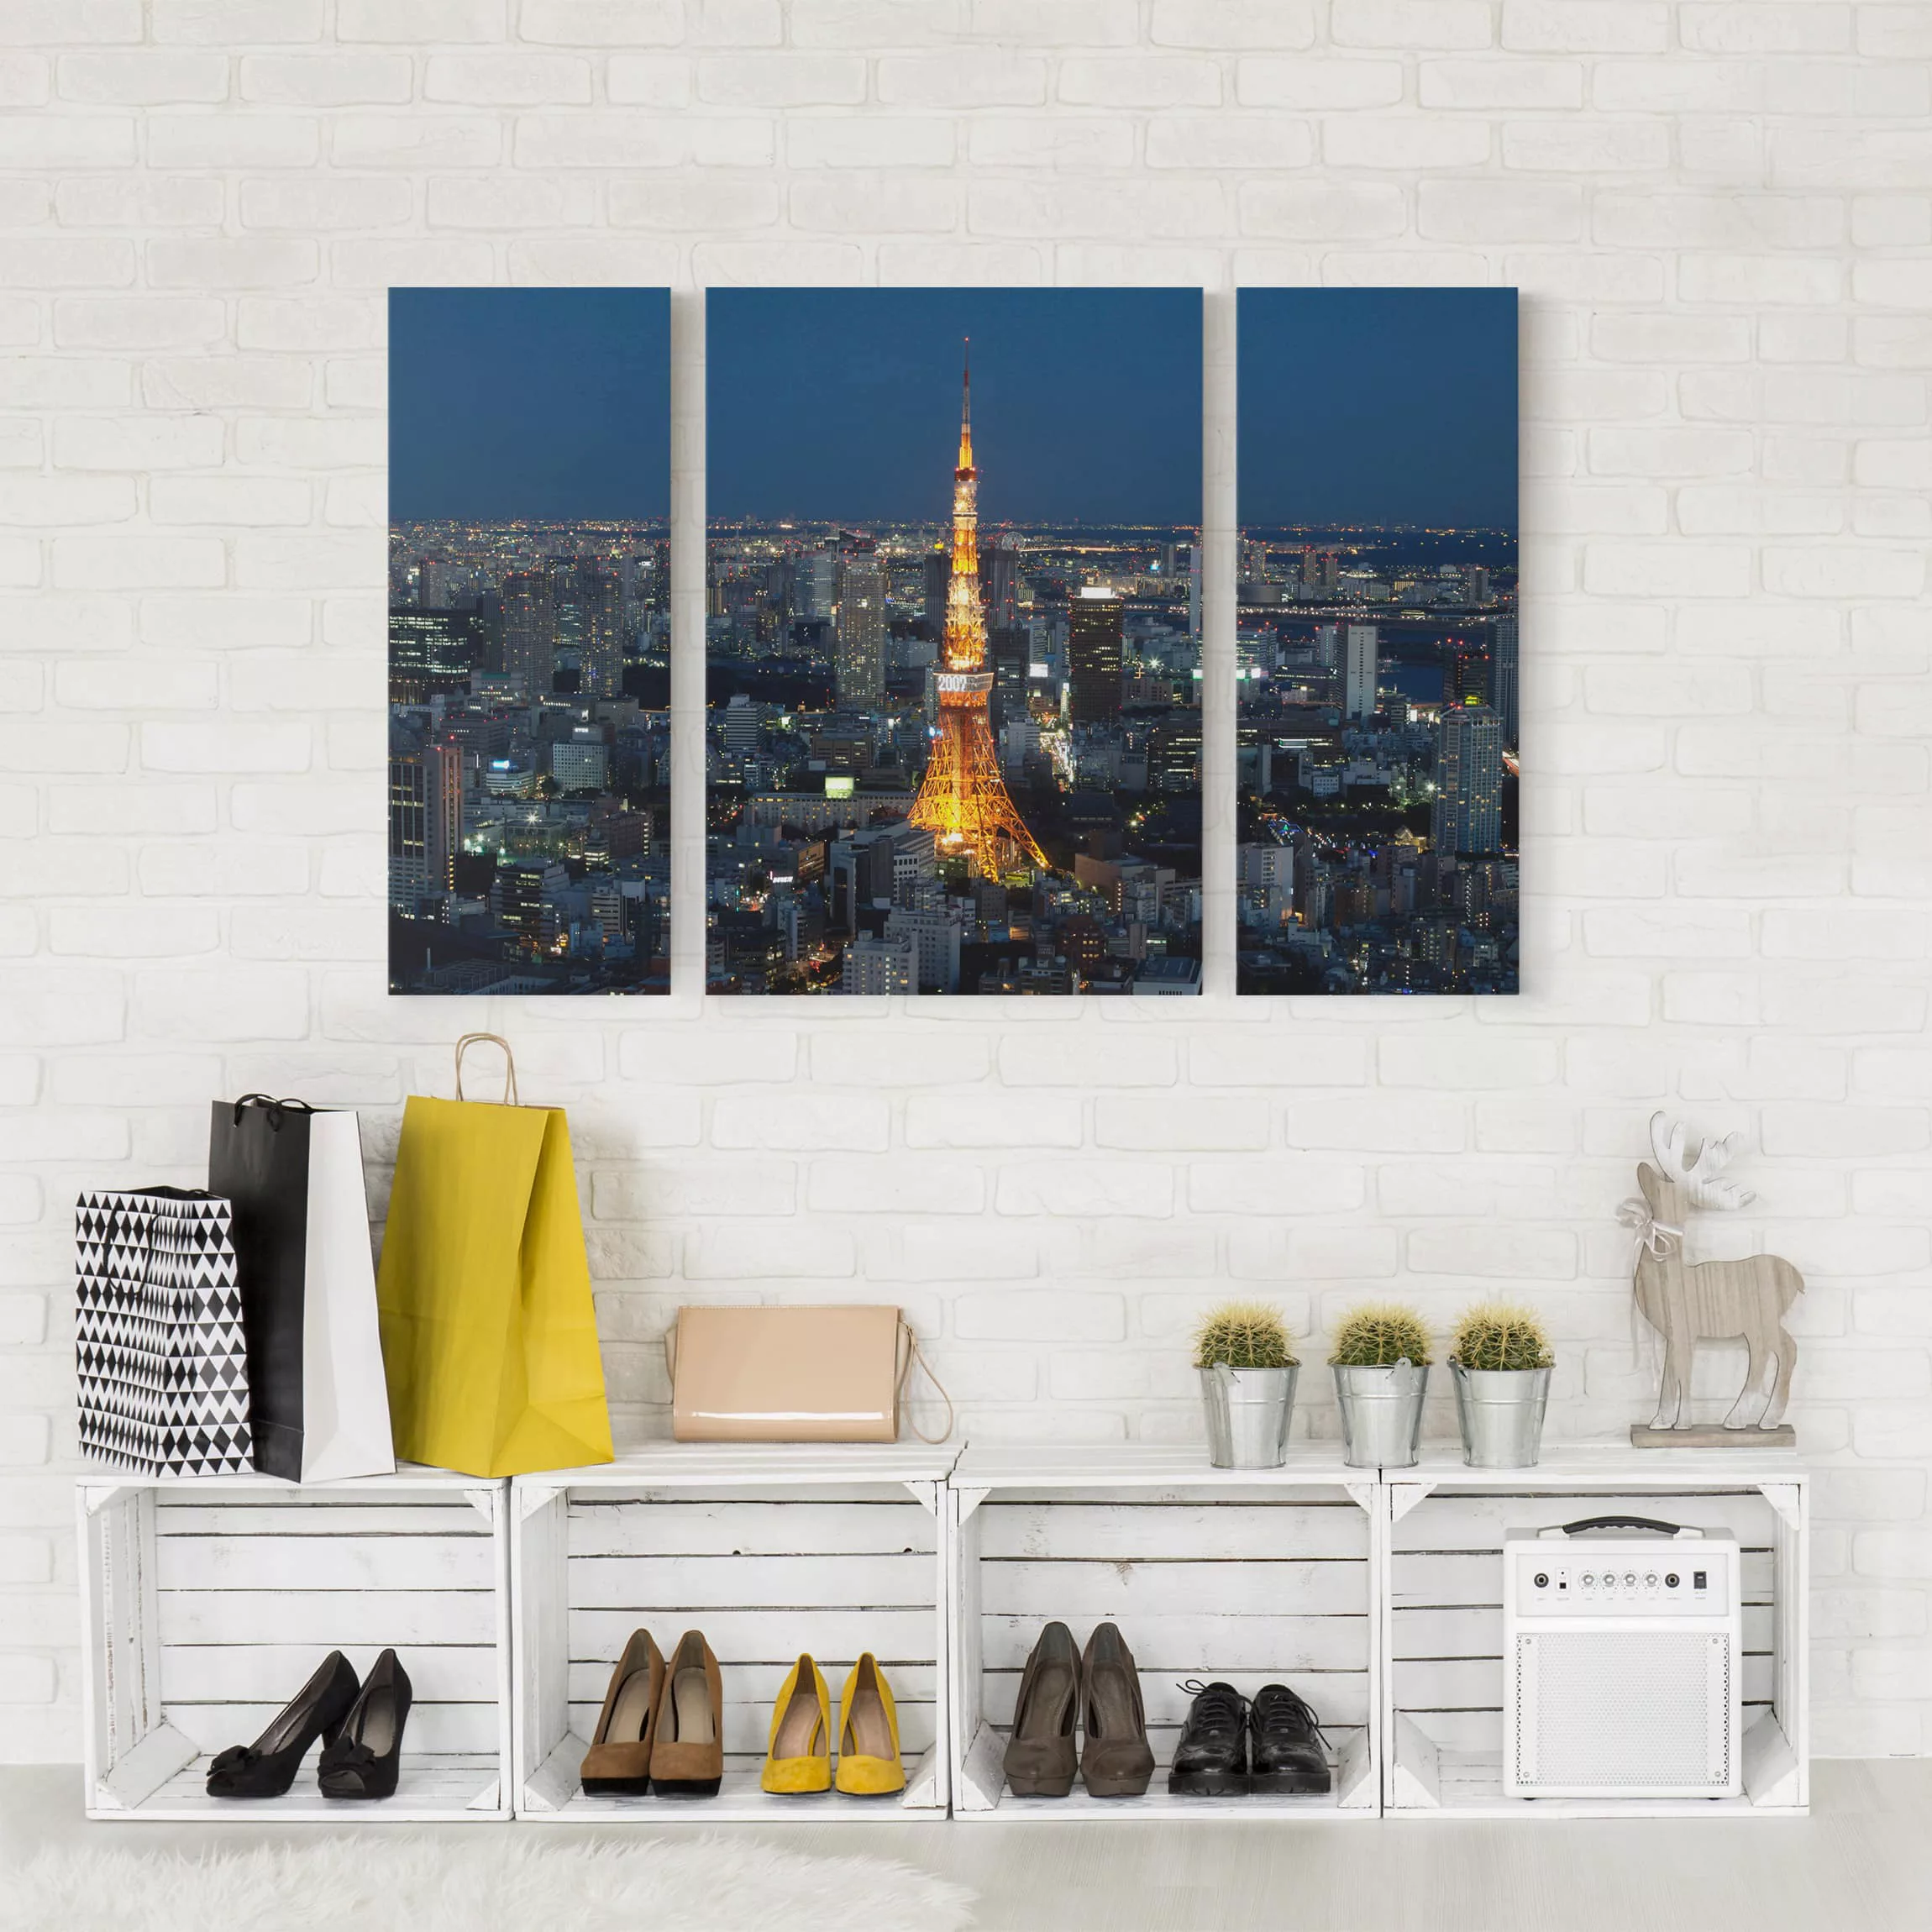 3-teiliges Leinwandbild Architektur & Skyline - Querformat Tokyo Tower günstig online kaufen